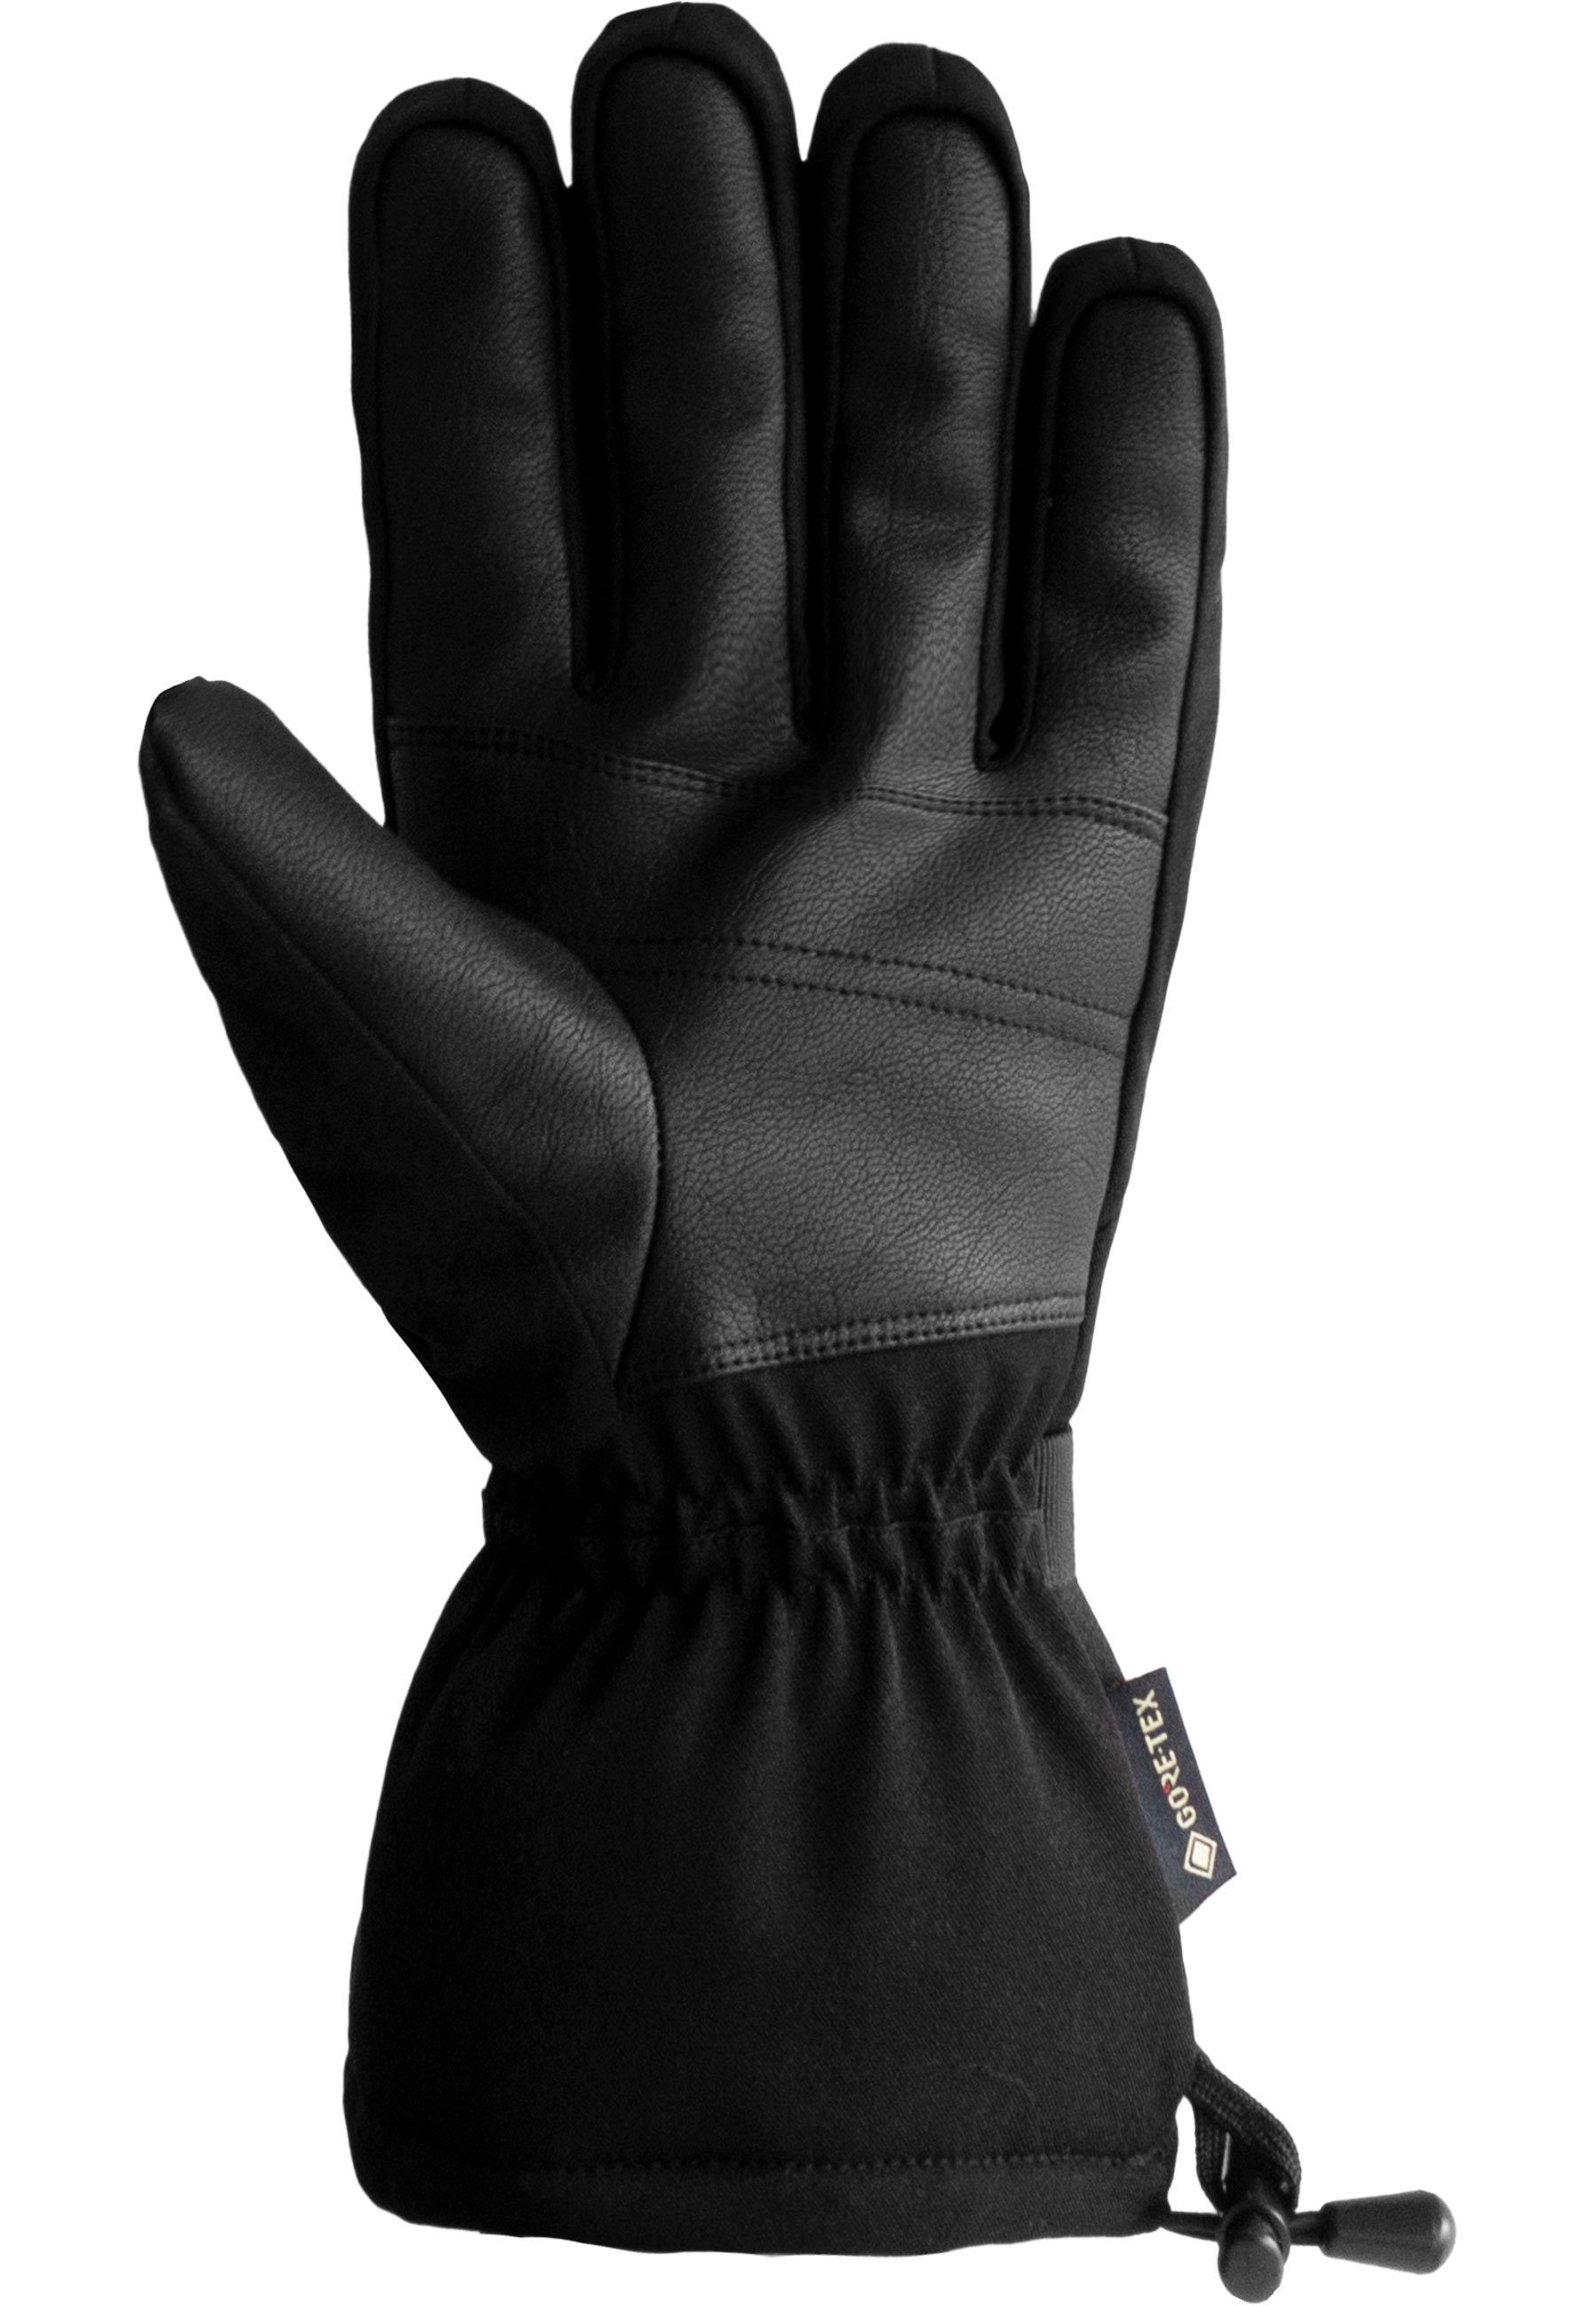 Warm Glove Skihandschuhe wasserdichtem atmungsaktivem Material GORE-TEX Winter und Reusch aus